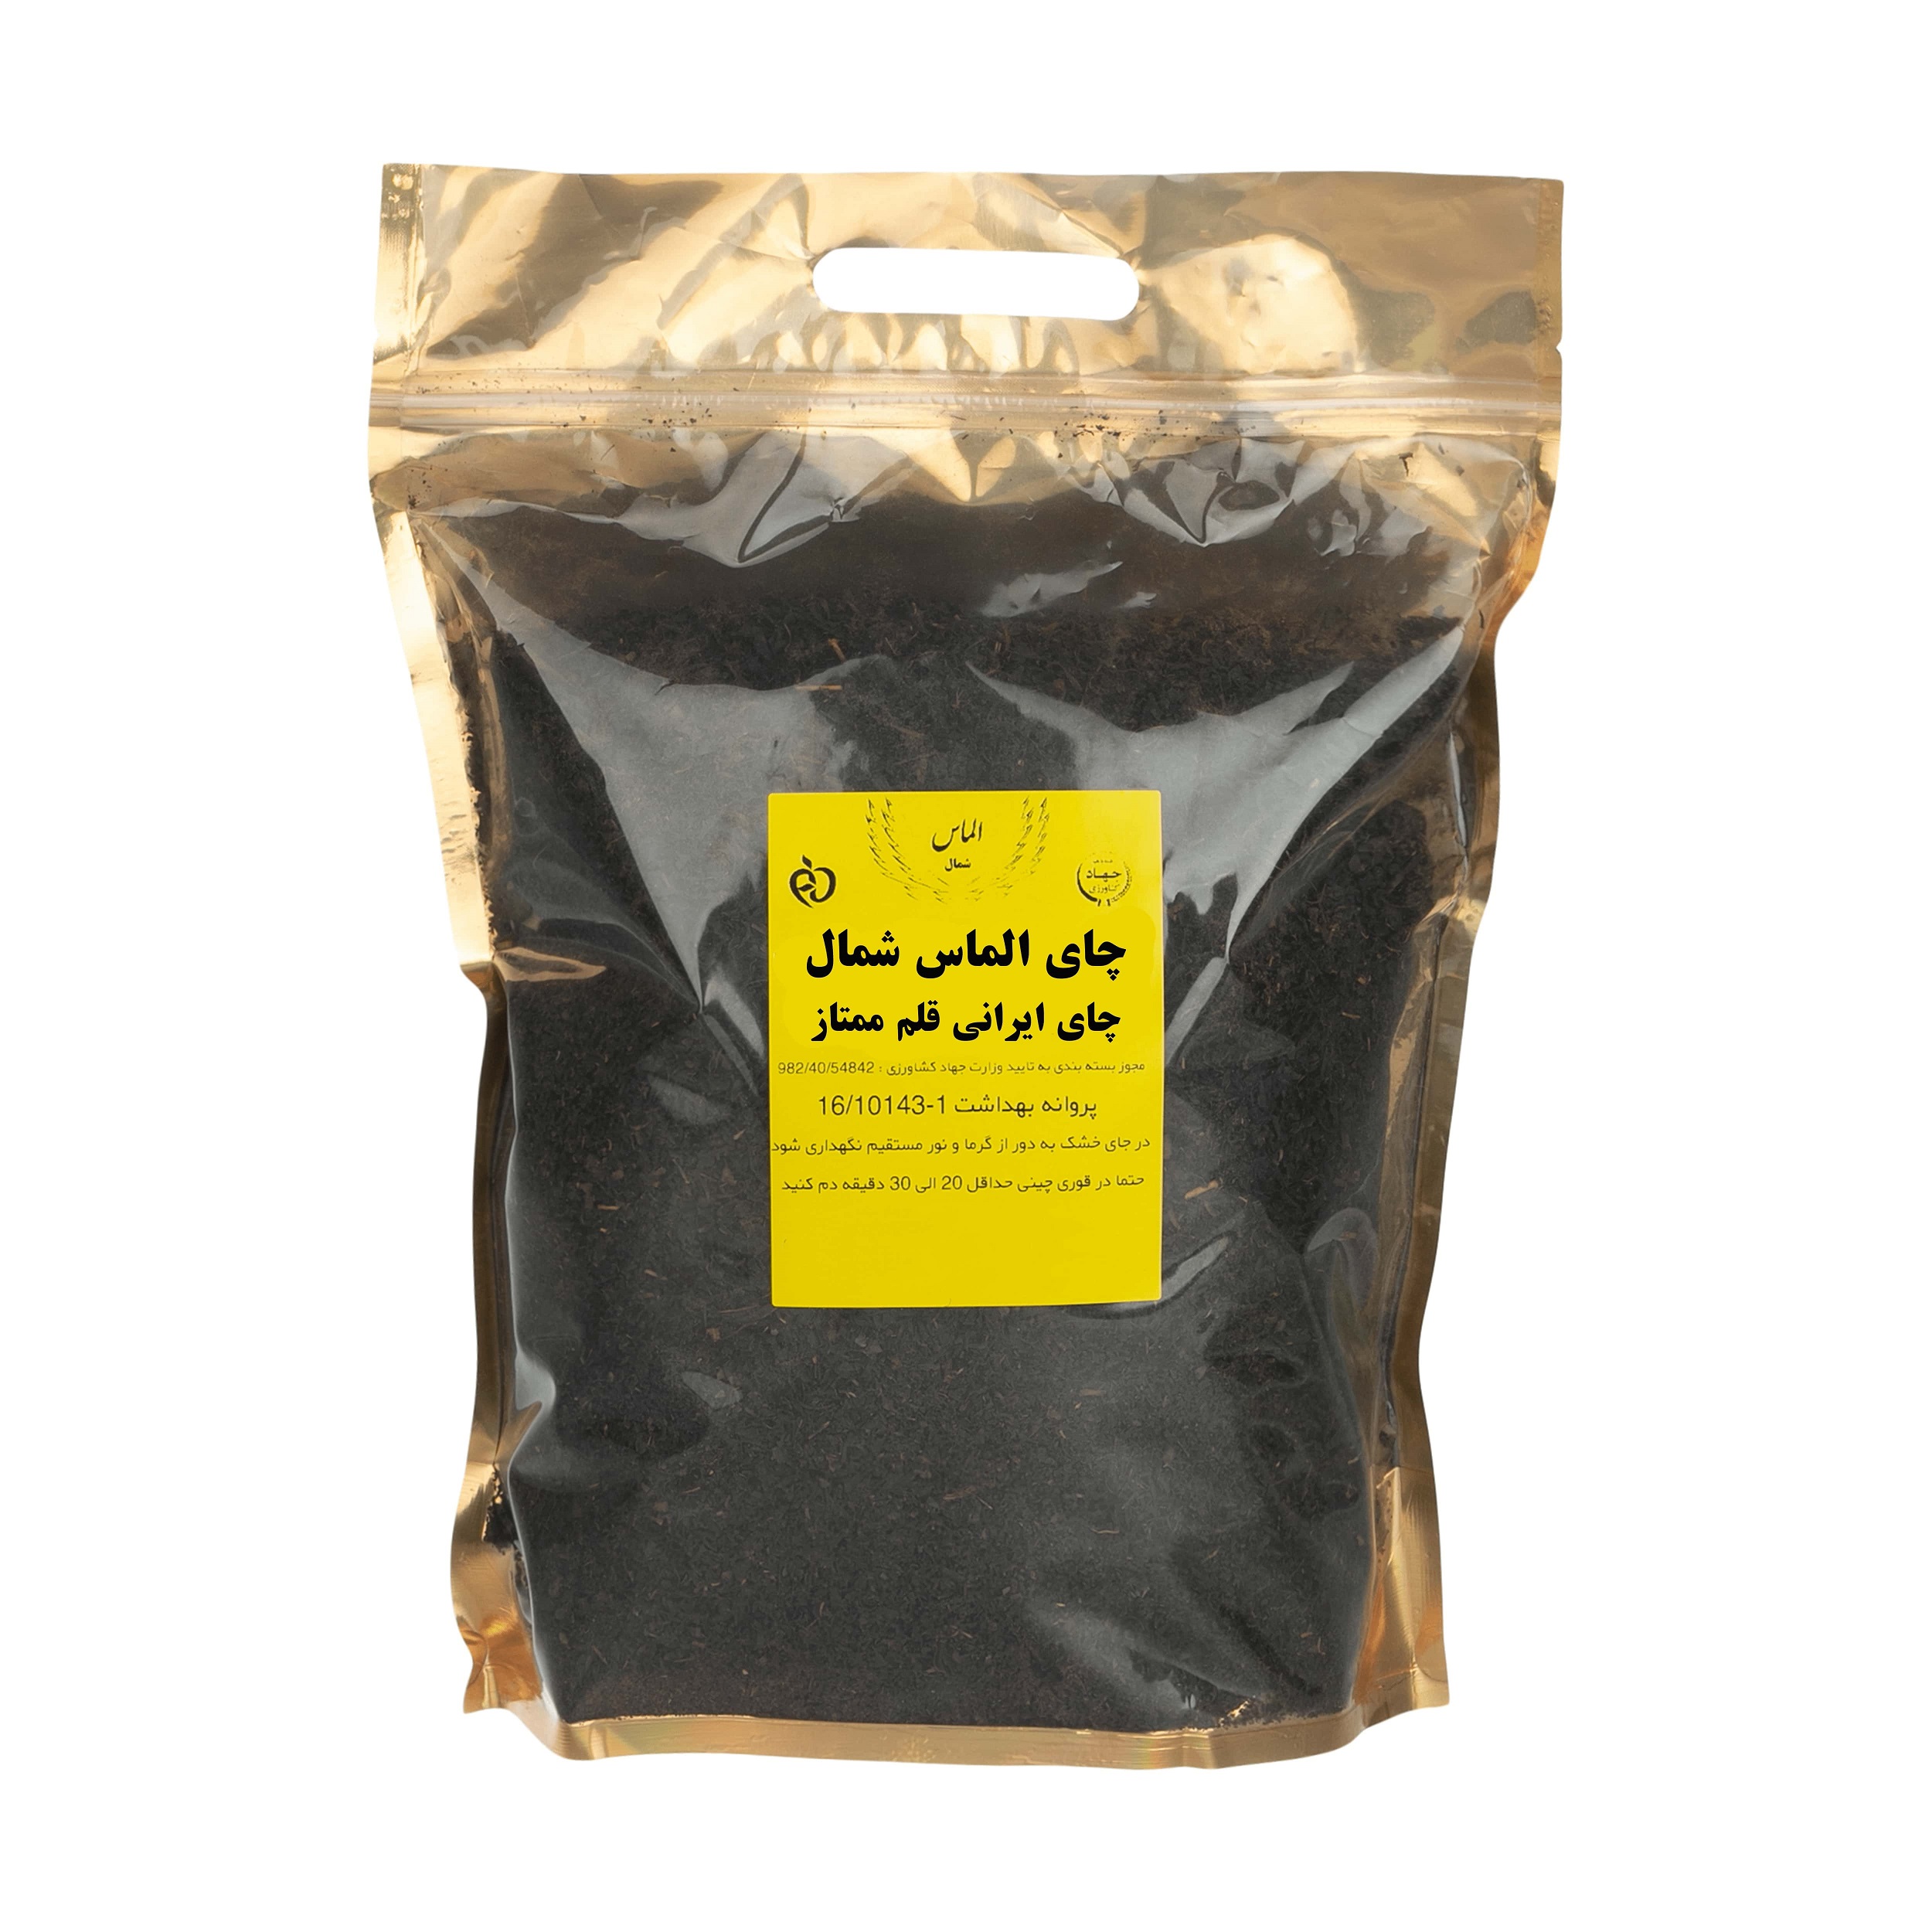 چای ایرانی سیاه قلم ممتاز الماس شمال - 1000 گرم